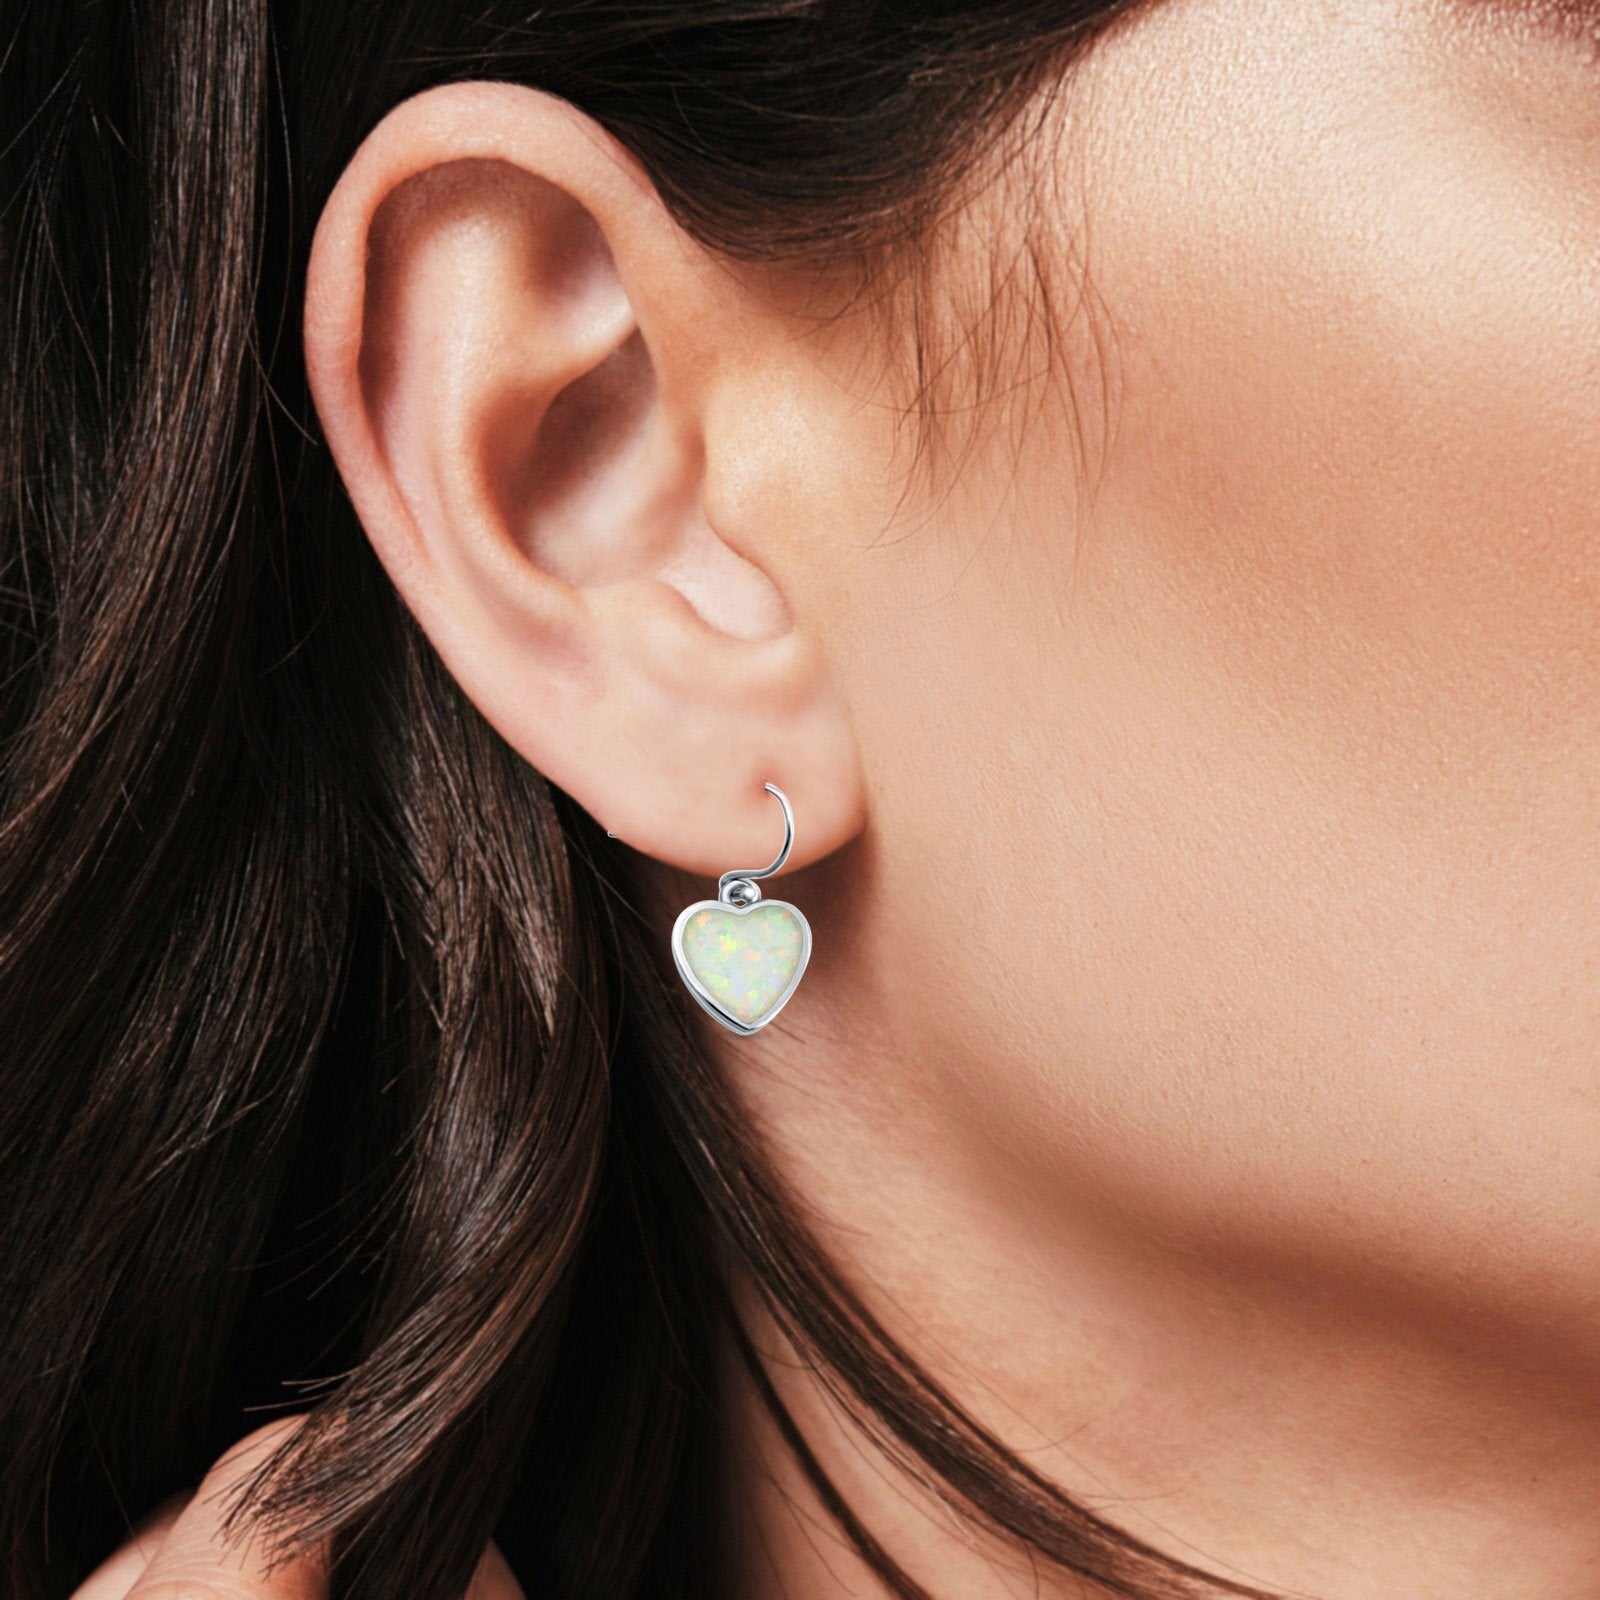 Drop Dangle Heart Earrings Created Opal 925 Sterling Silver (9mm)